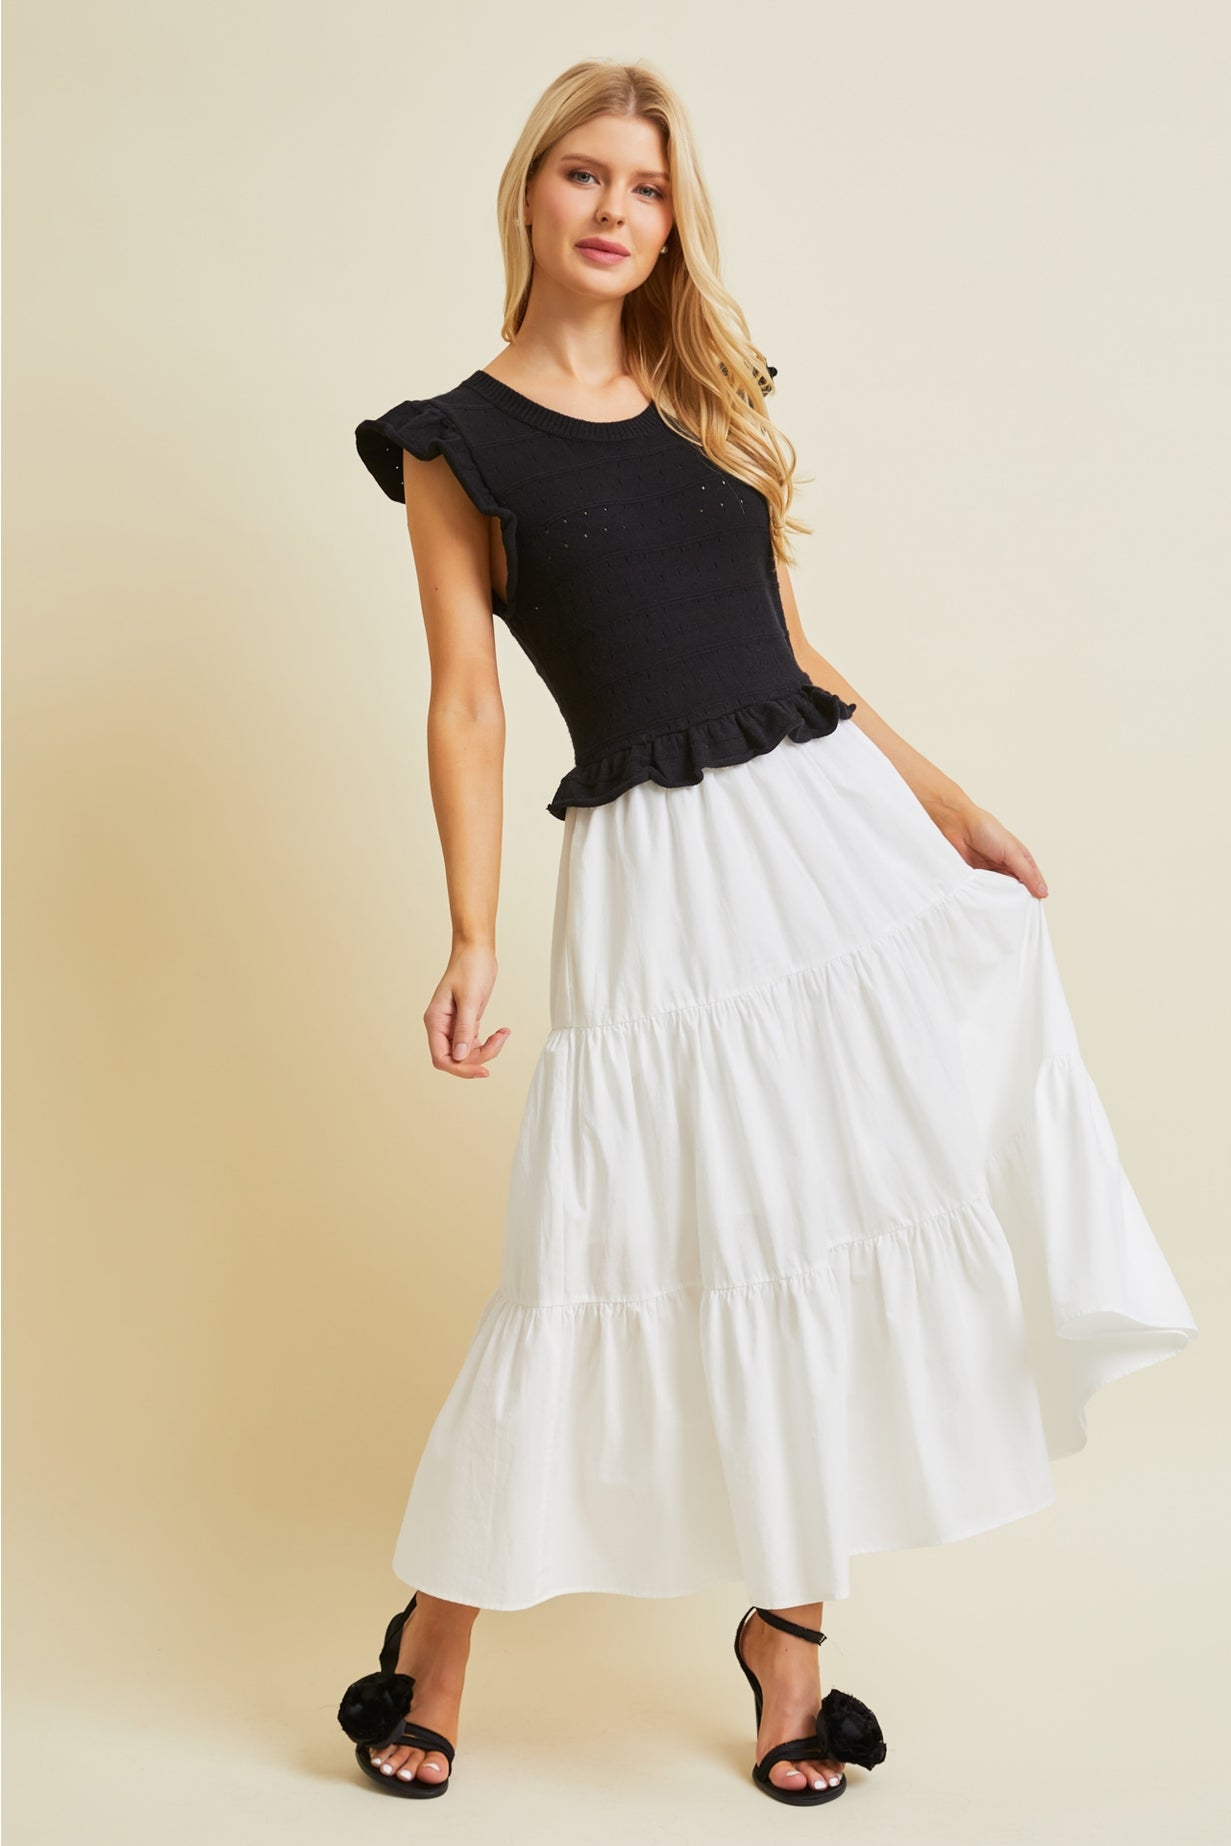 Heyson Plus size Knit top poplin Skirt Midi dress